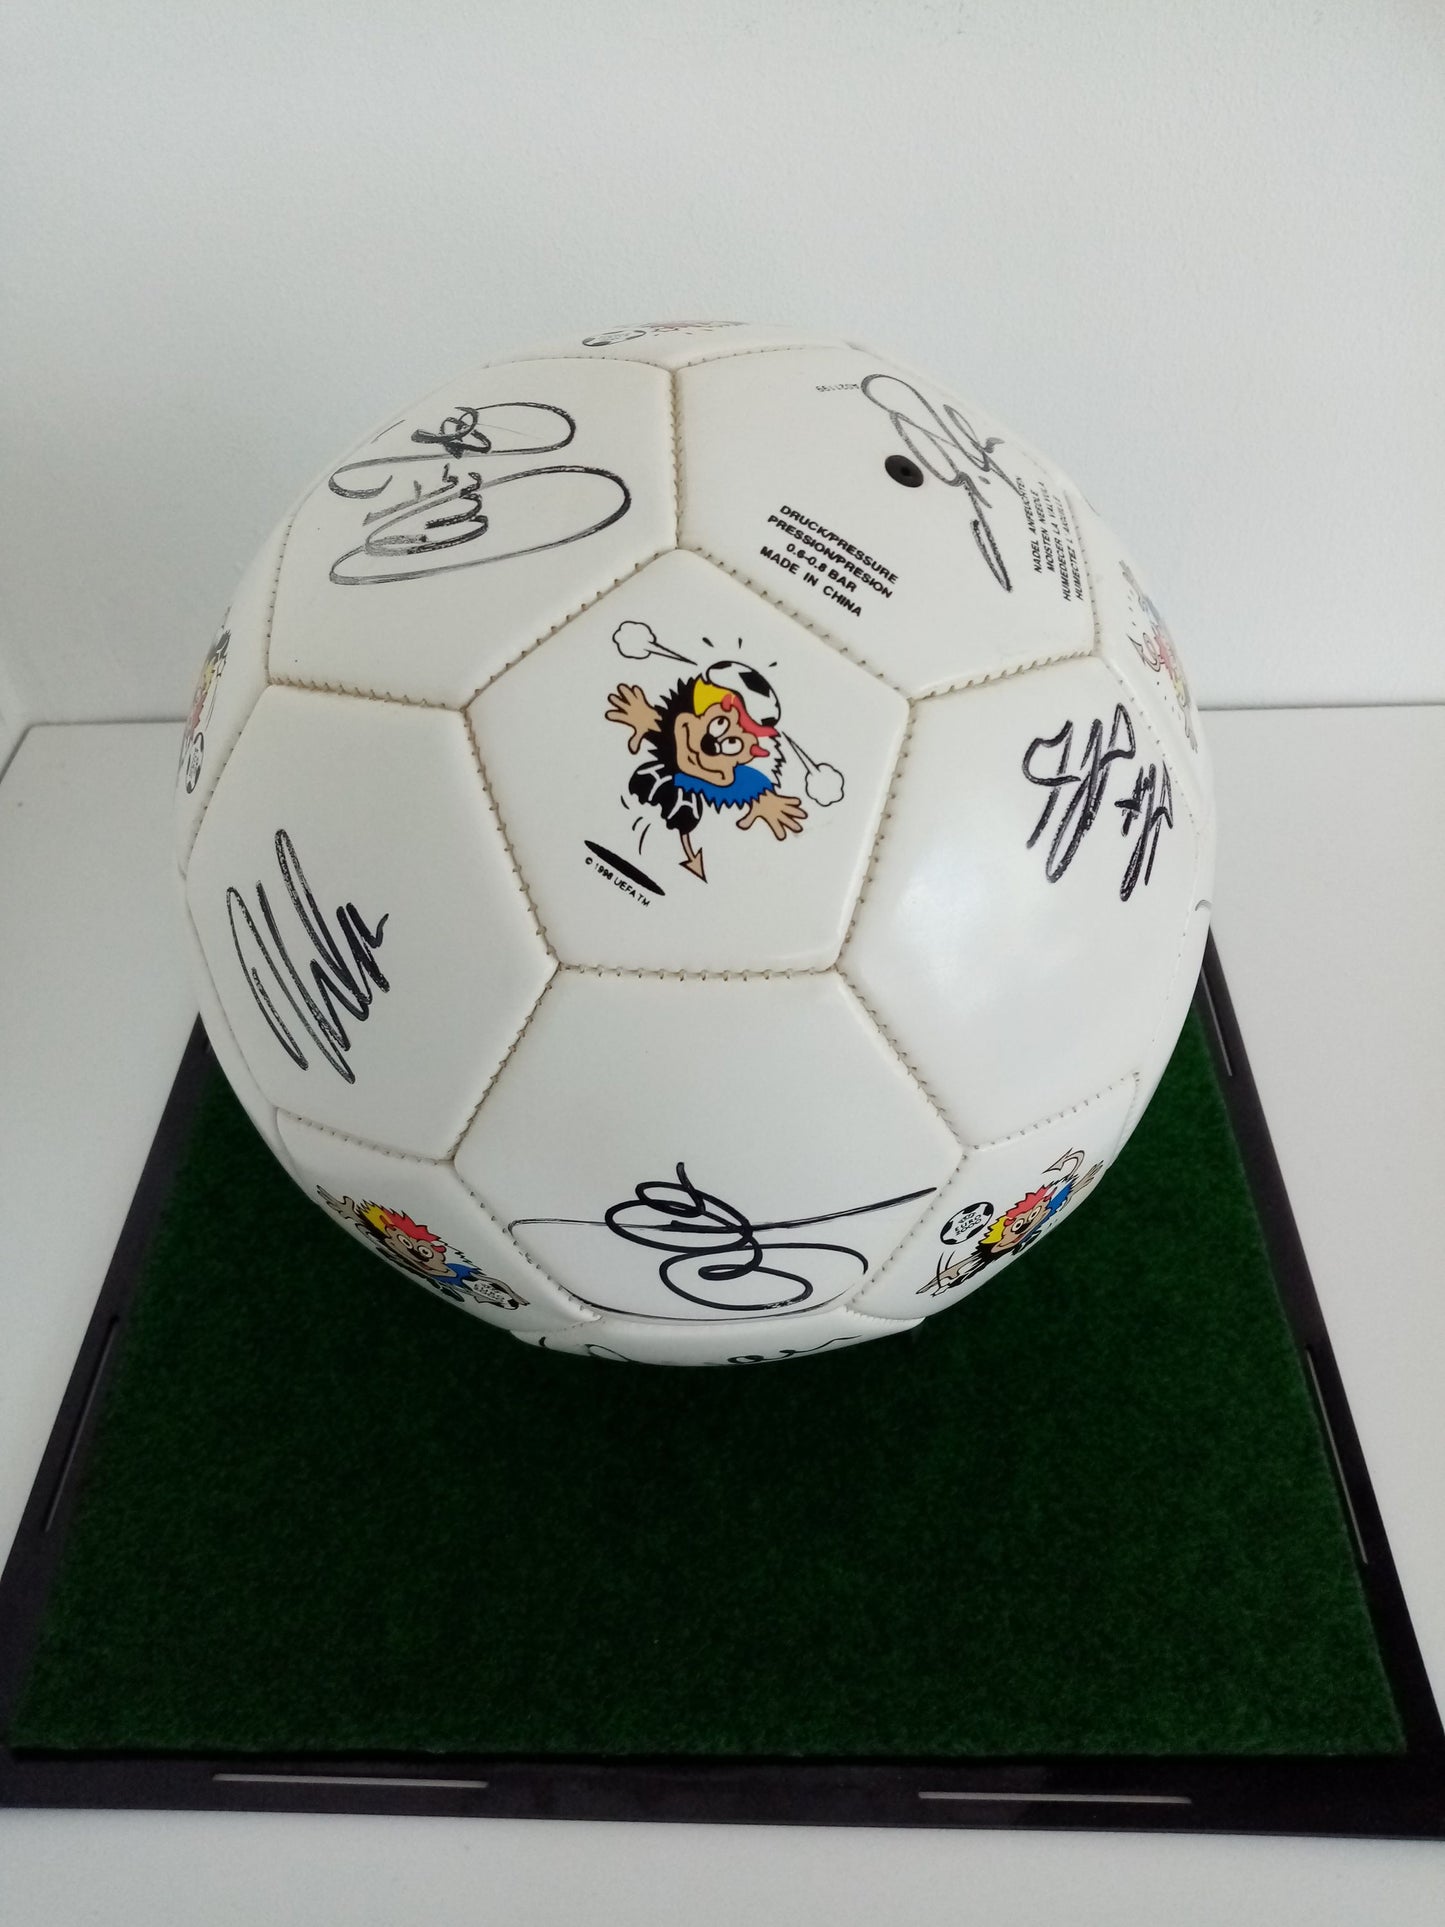 Fußball Teamsigniert EM 2000 in Vitrine DFB Unterschrift Autogramm Adidas Ball